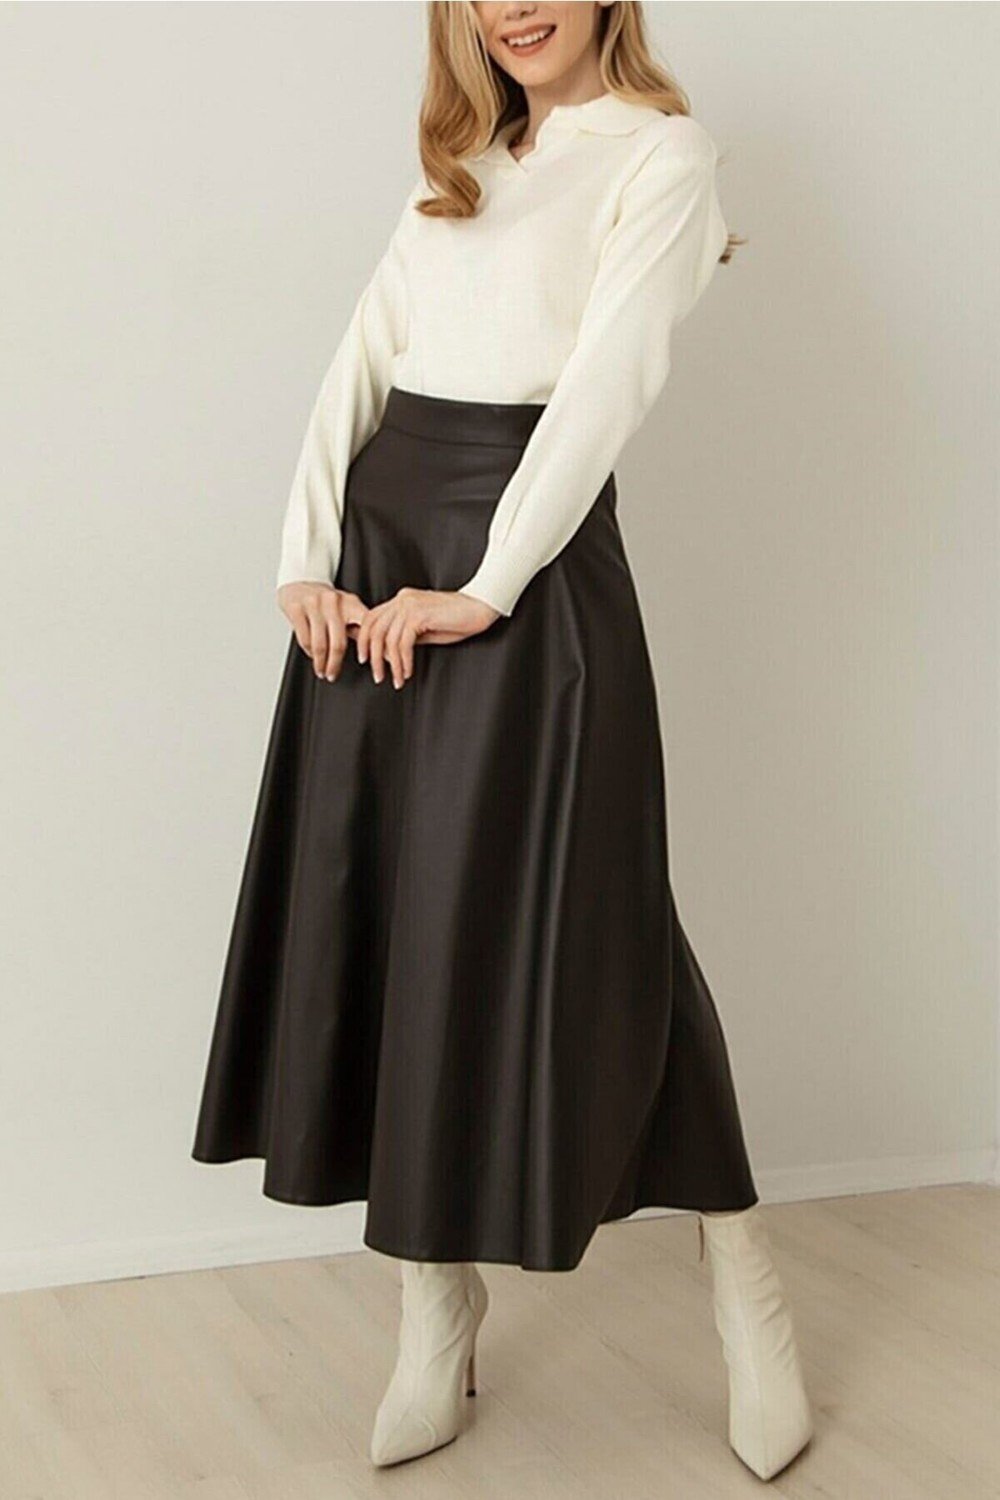 HAKKE Women's Leather Mevlana Black Skirt